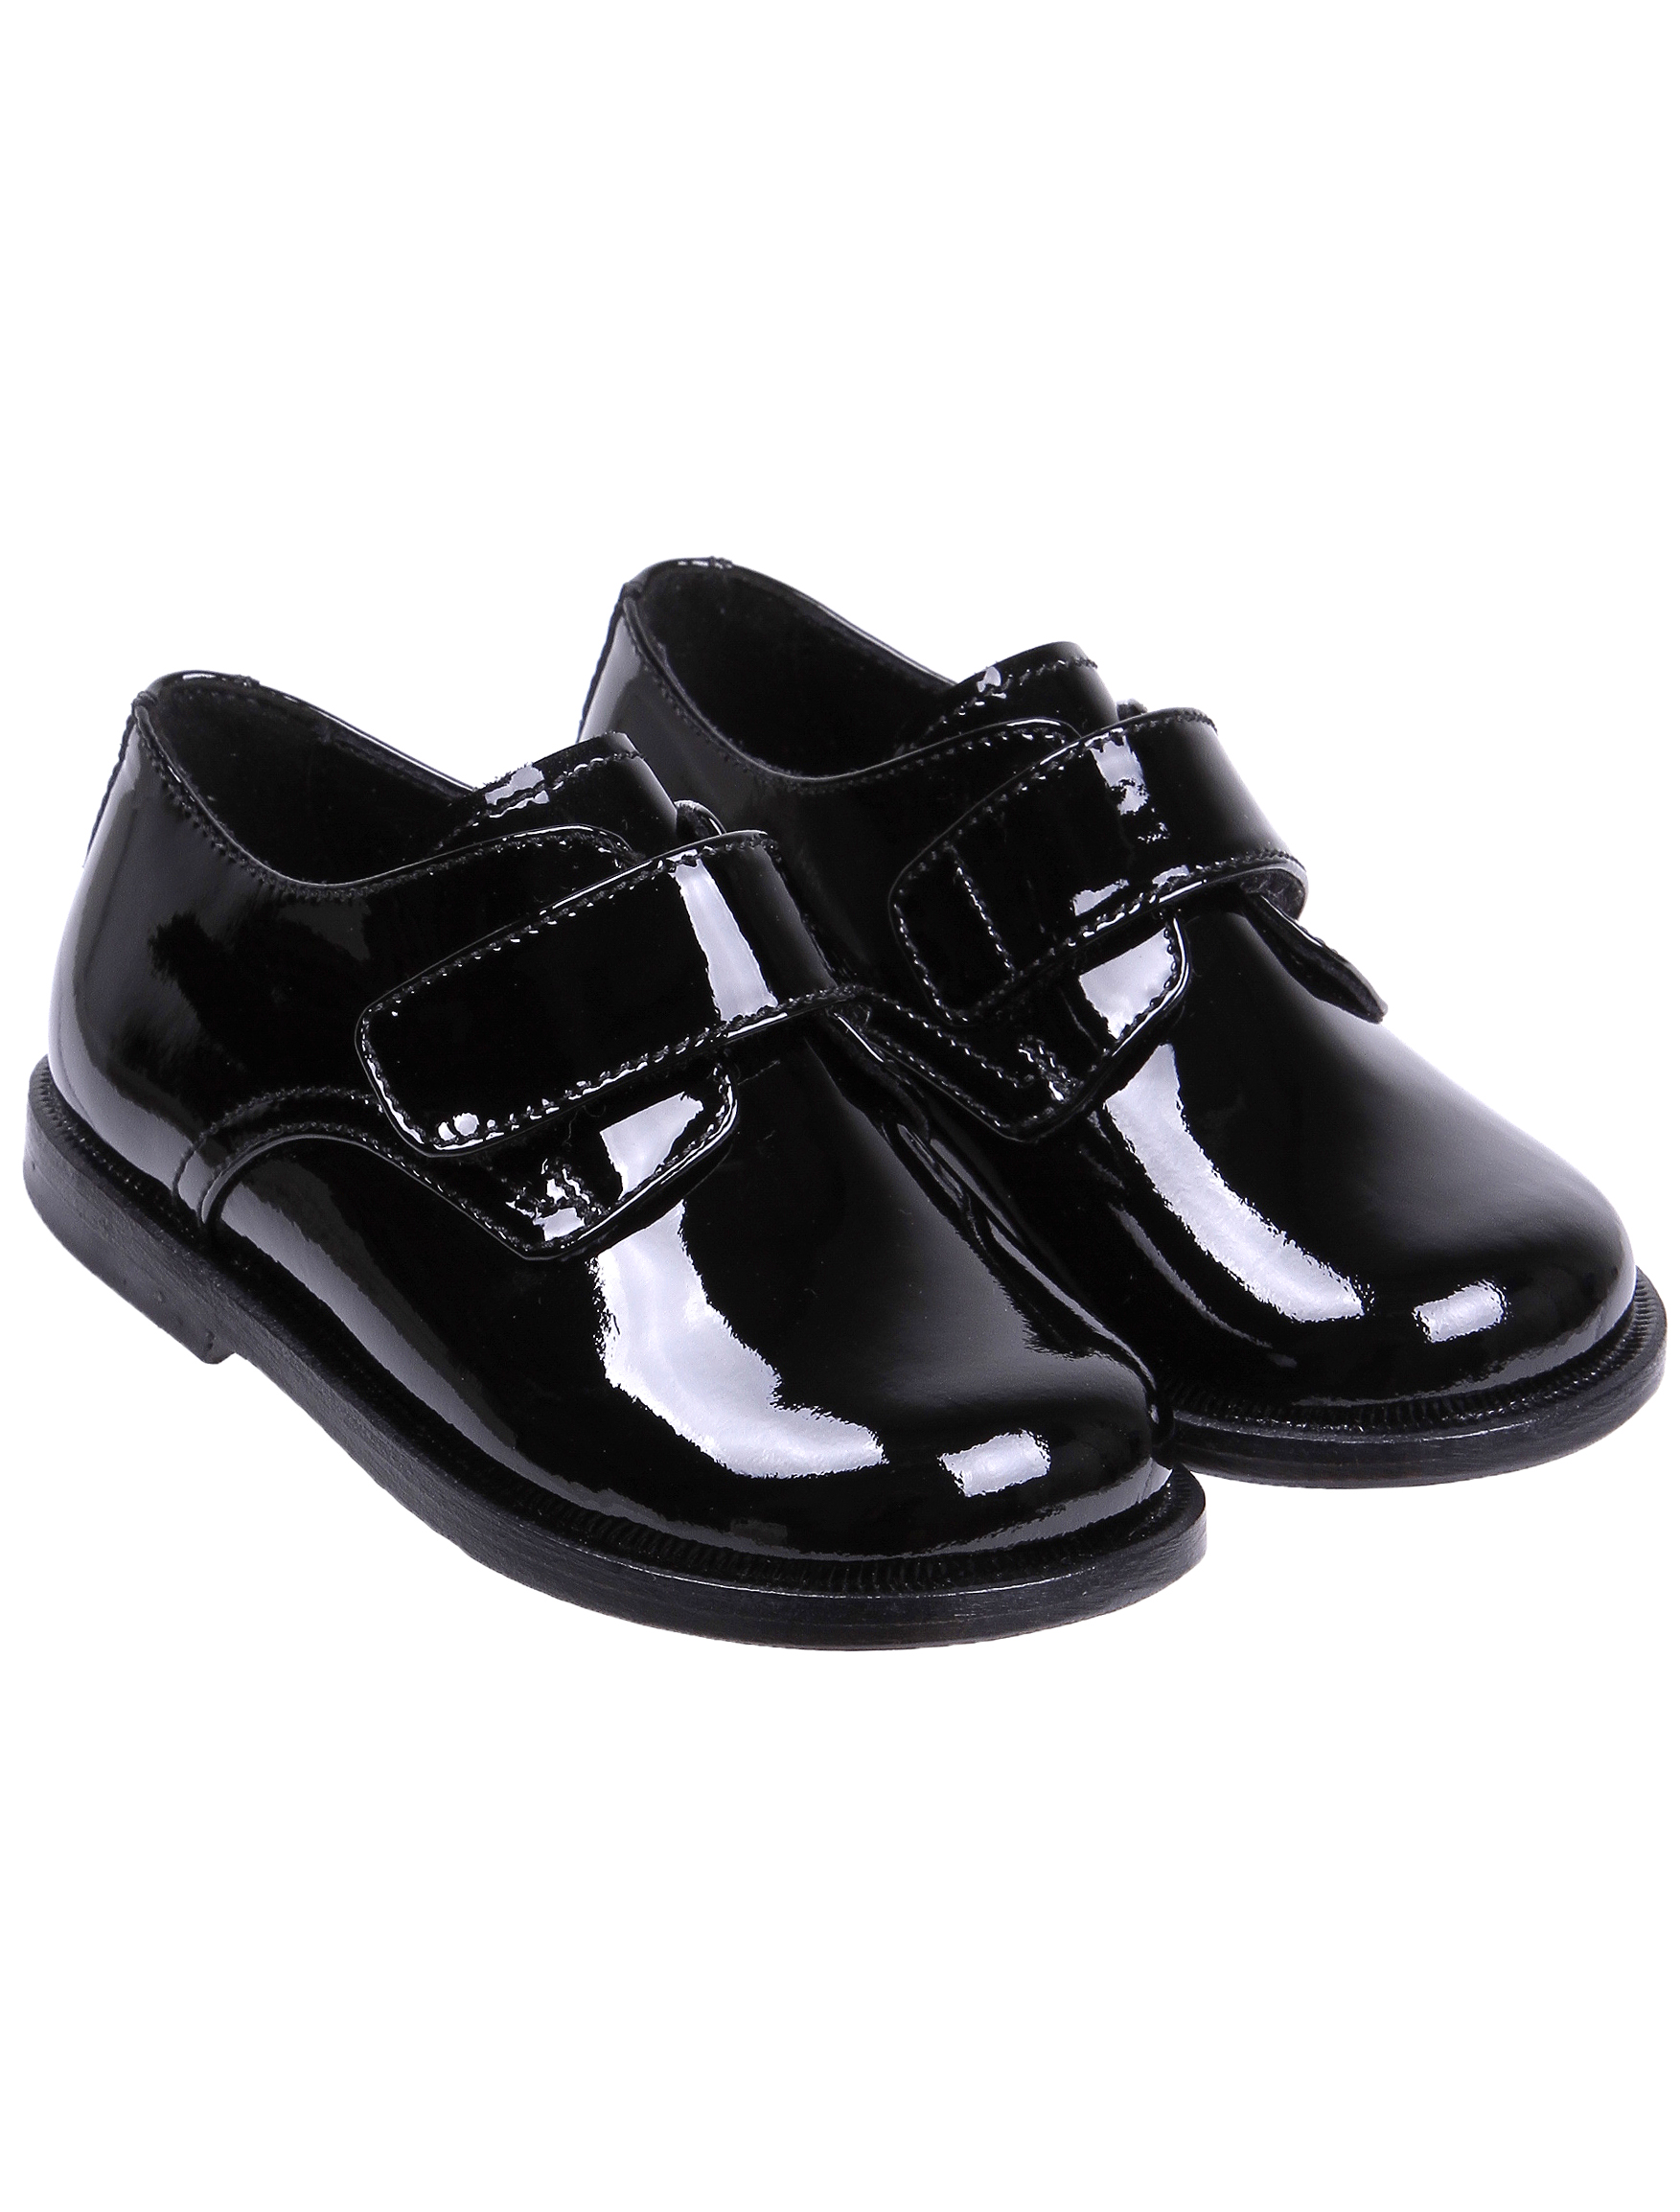 Туфли Missouri 1913233, цвет черный, размер 29 2011119880092 - фото 1